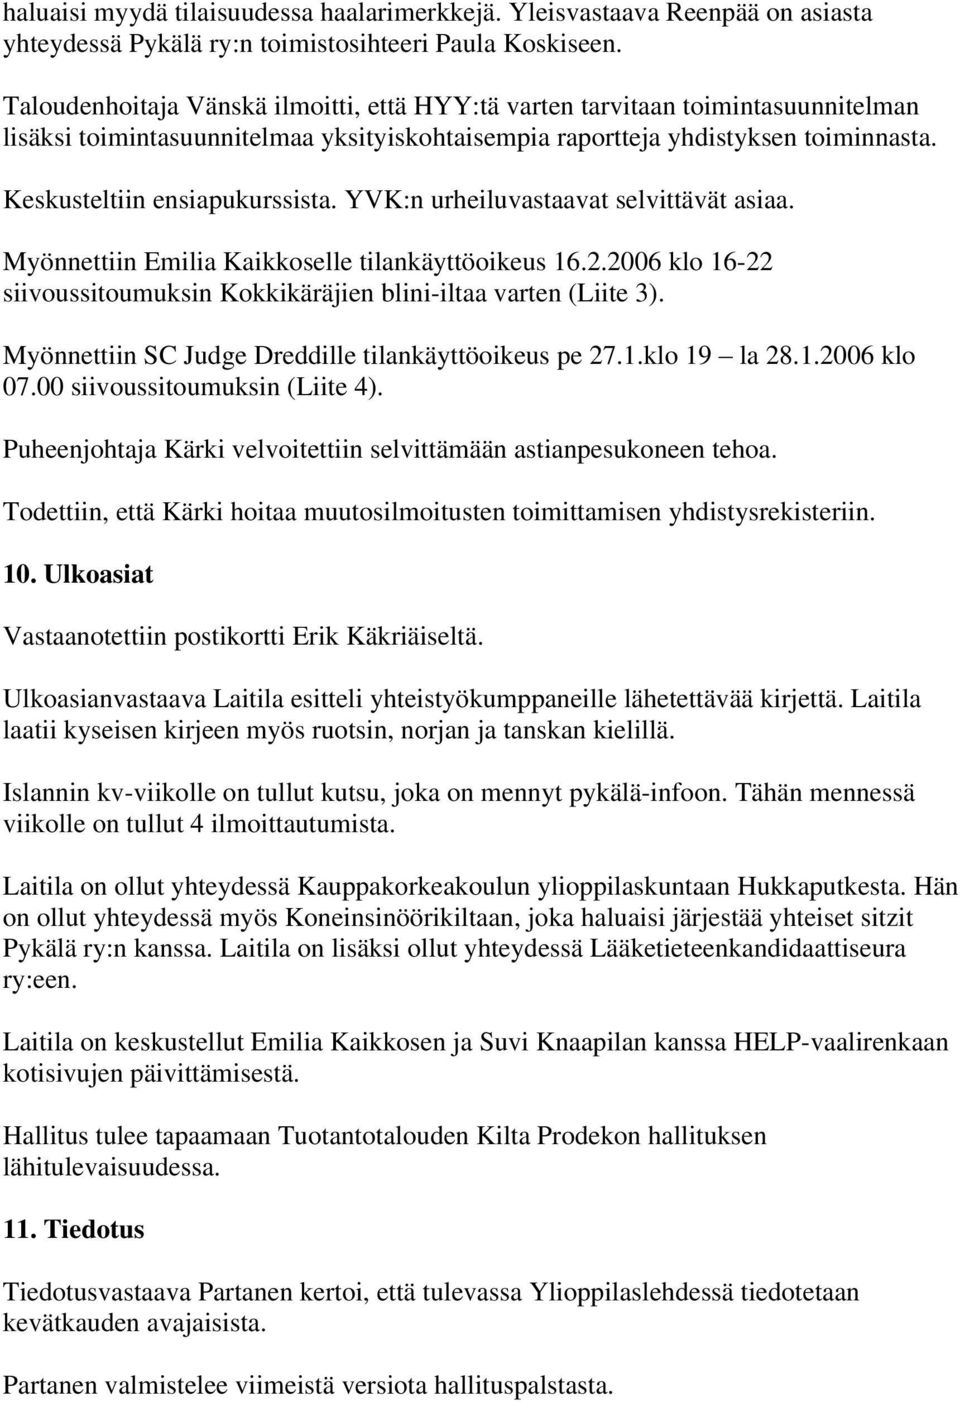 YVK:n urheiluvastaavat selvittävät asiaa. Myönnettiin Emilia Kaikkoselle tilankäyttöoikeus 16.2.2006 klo 16-22 siivoussitoumuksin Kokkikäräjien blini-iltaa varten (Liite 3).